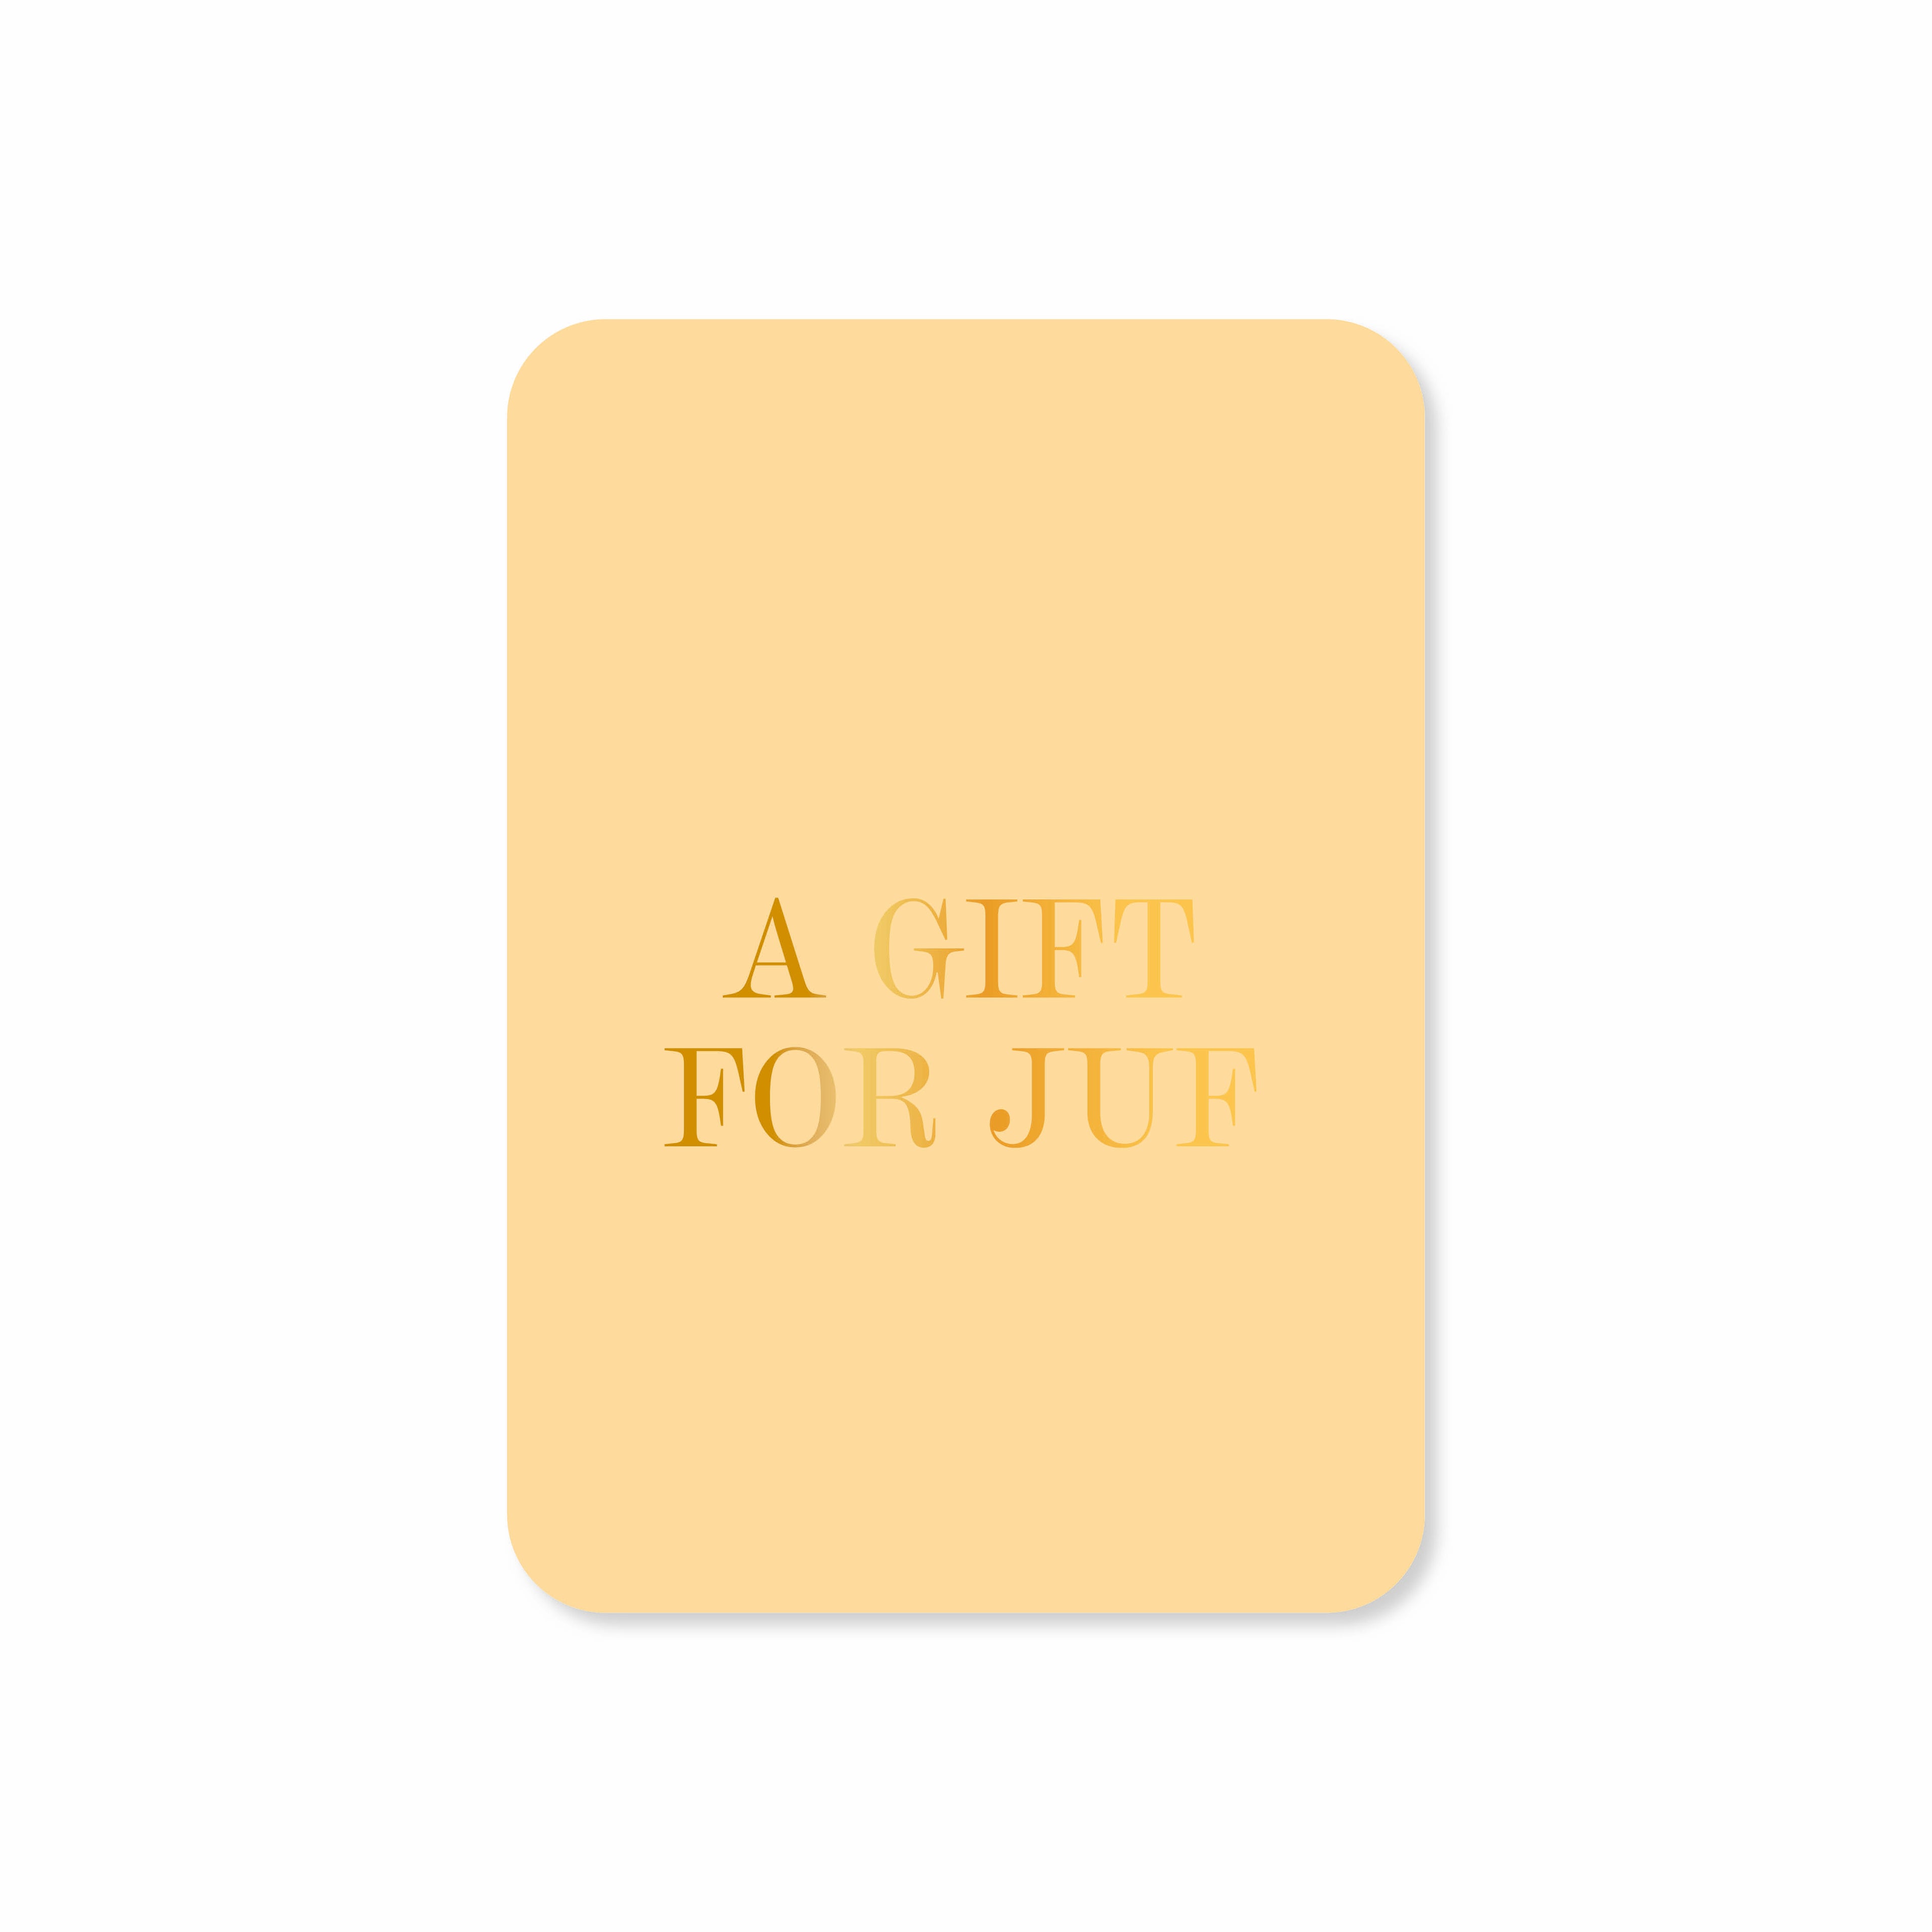 Minikaart A gift for juf (met goudfolie)